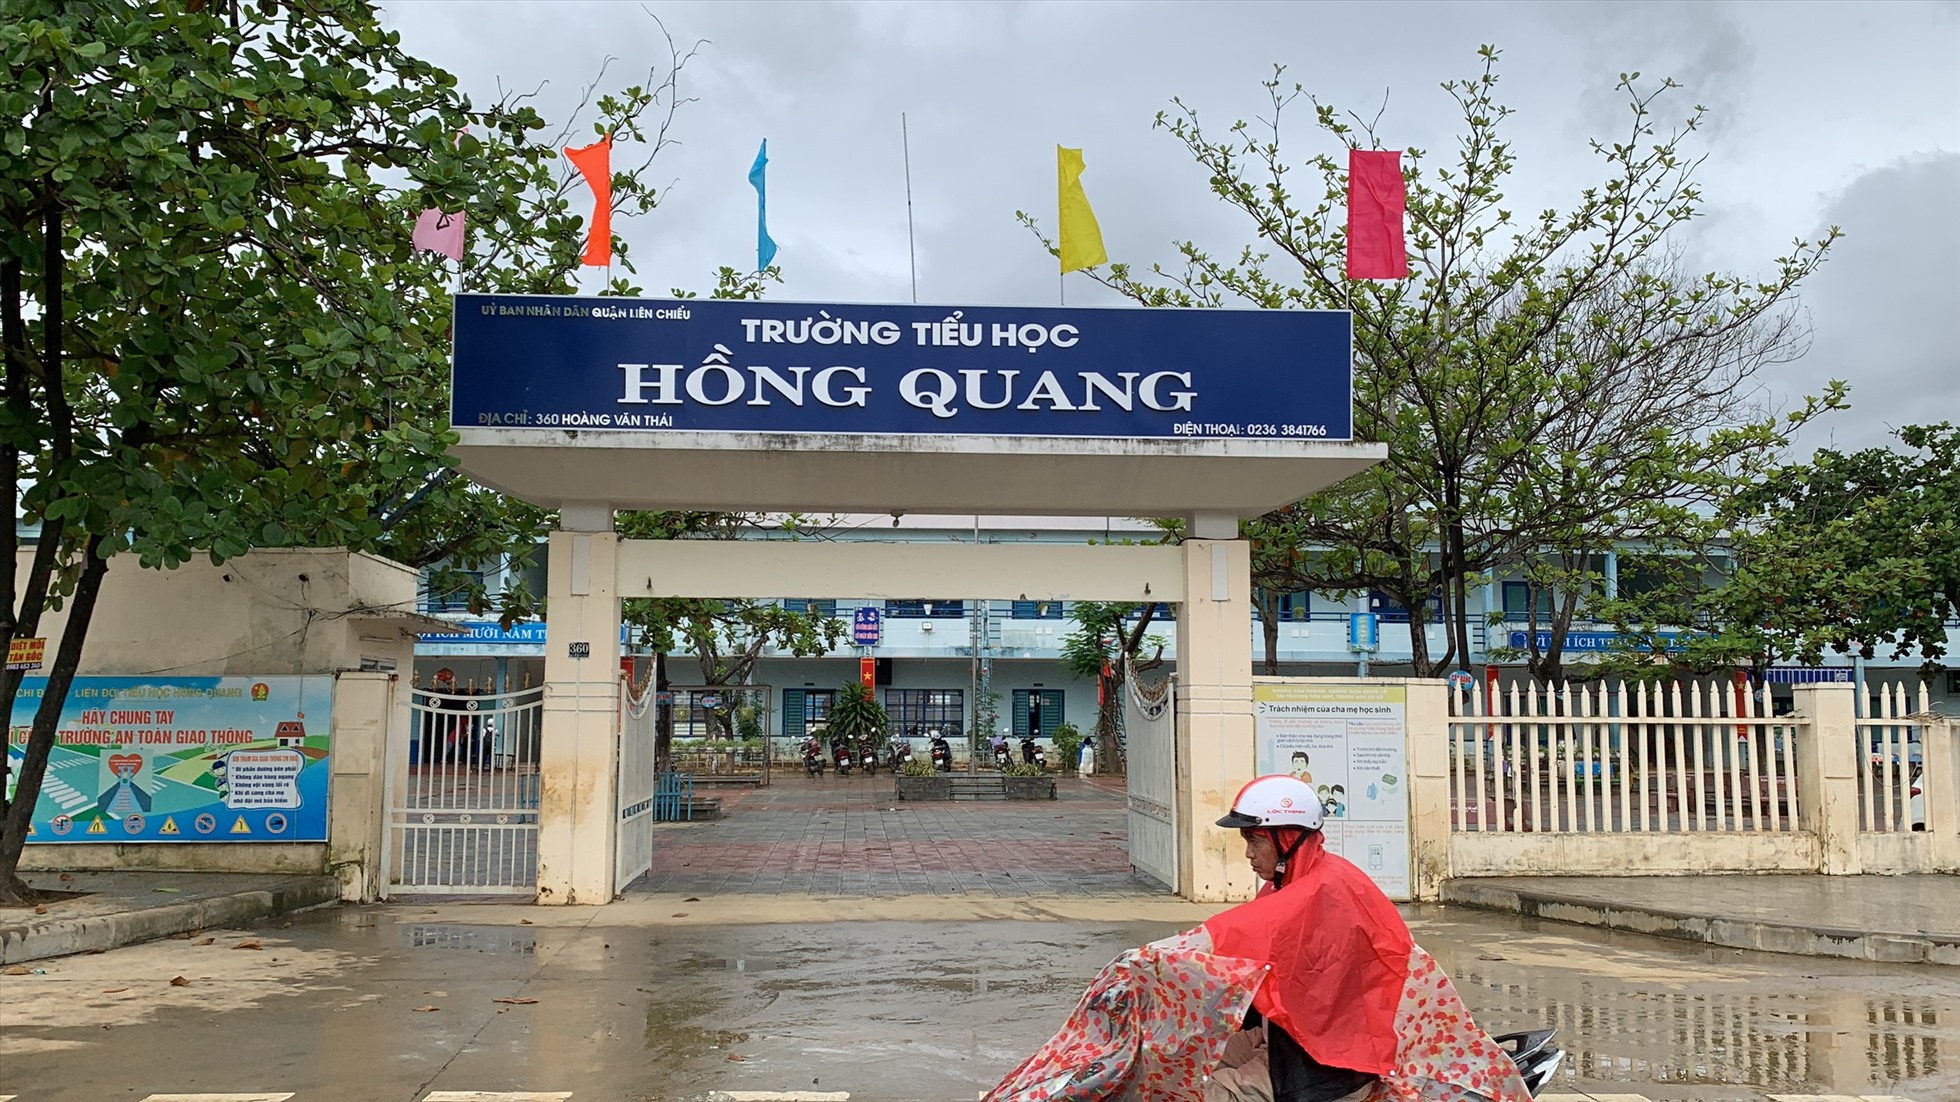 Trường Tiểu học Hồng Quang nằm trên đường Hoàng Văn Thái là một trong những điểm trường bị ngập sâu nhất của thành phố Đà Nẵng trong đợt mưa lũ 14.10 vừa qua.